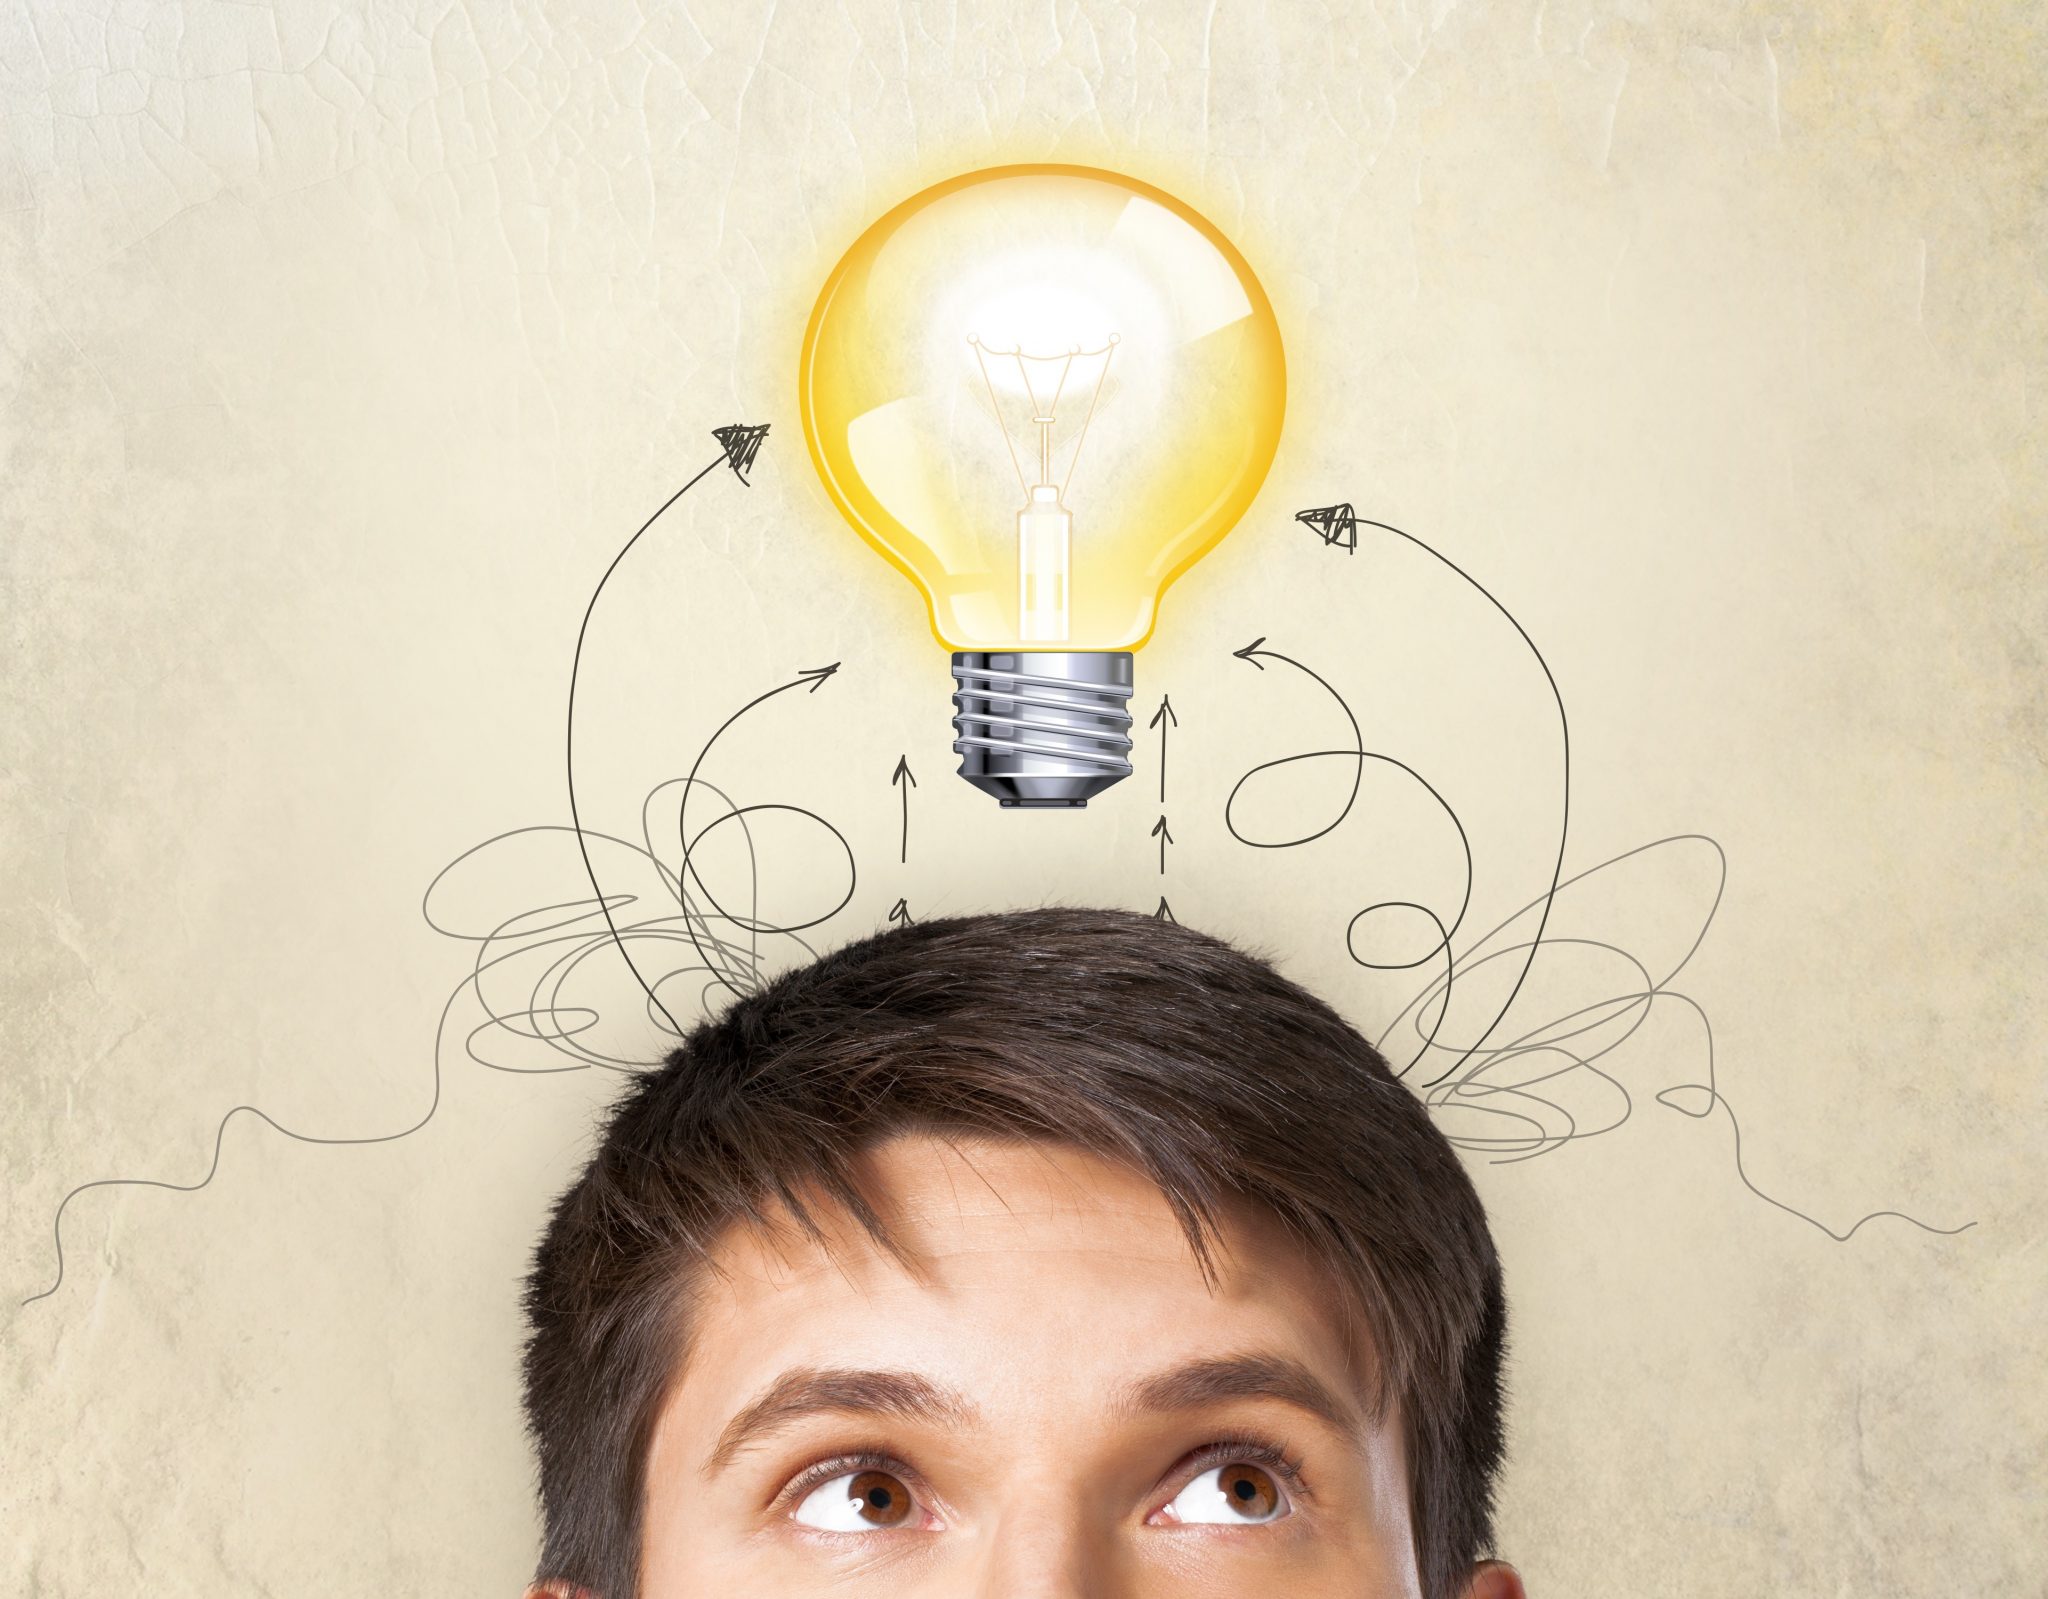 Гениальные мысли приходят. Креативные идеи с лампочкой. Лампочка над головой. Пришла идея. Лампочка идея.